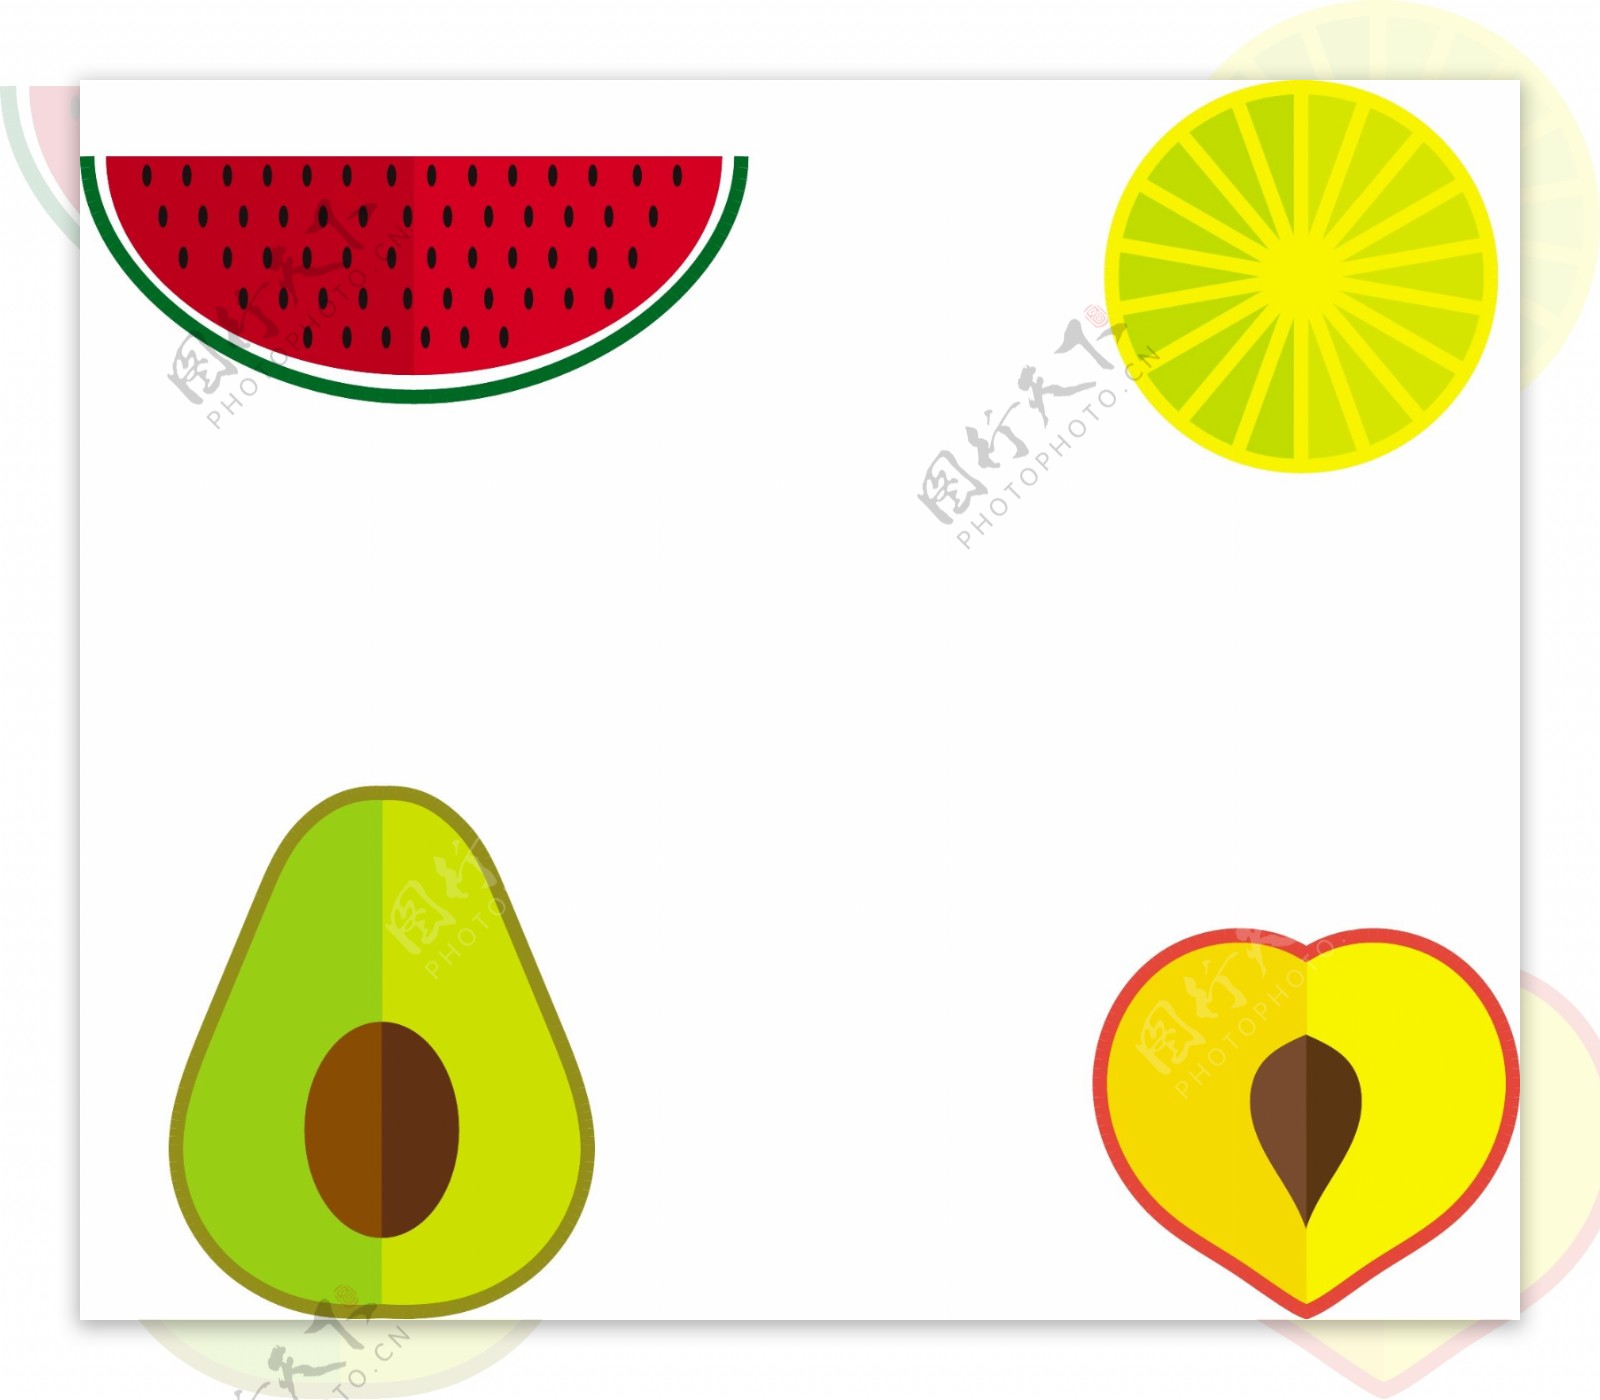 切片水果的插图